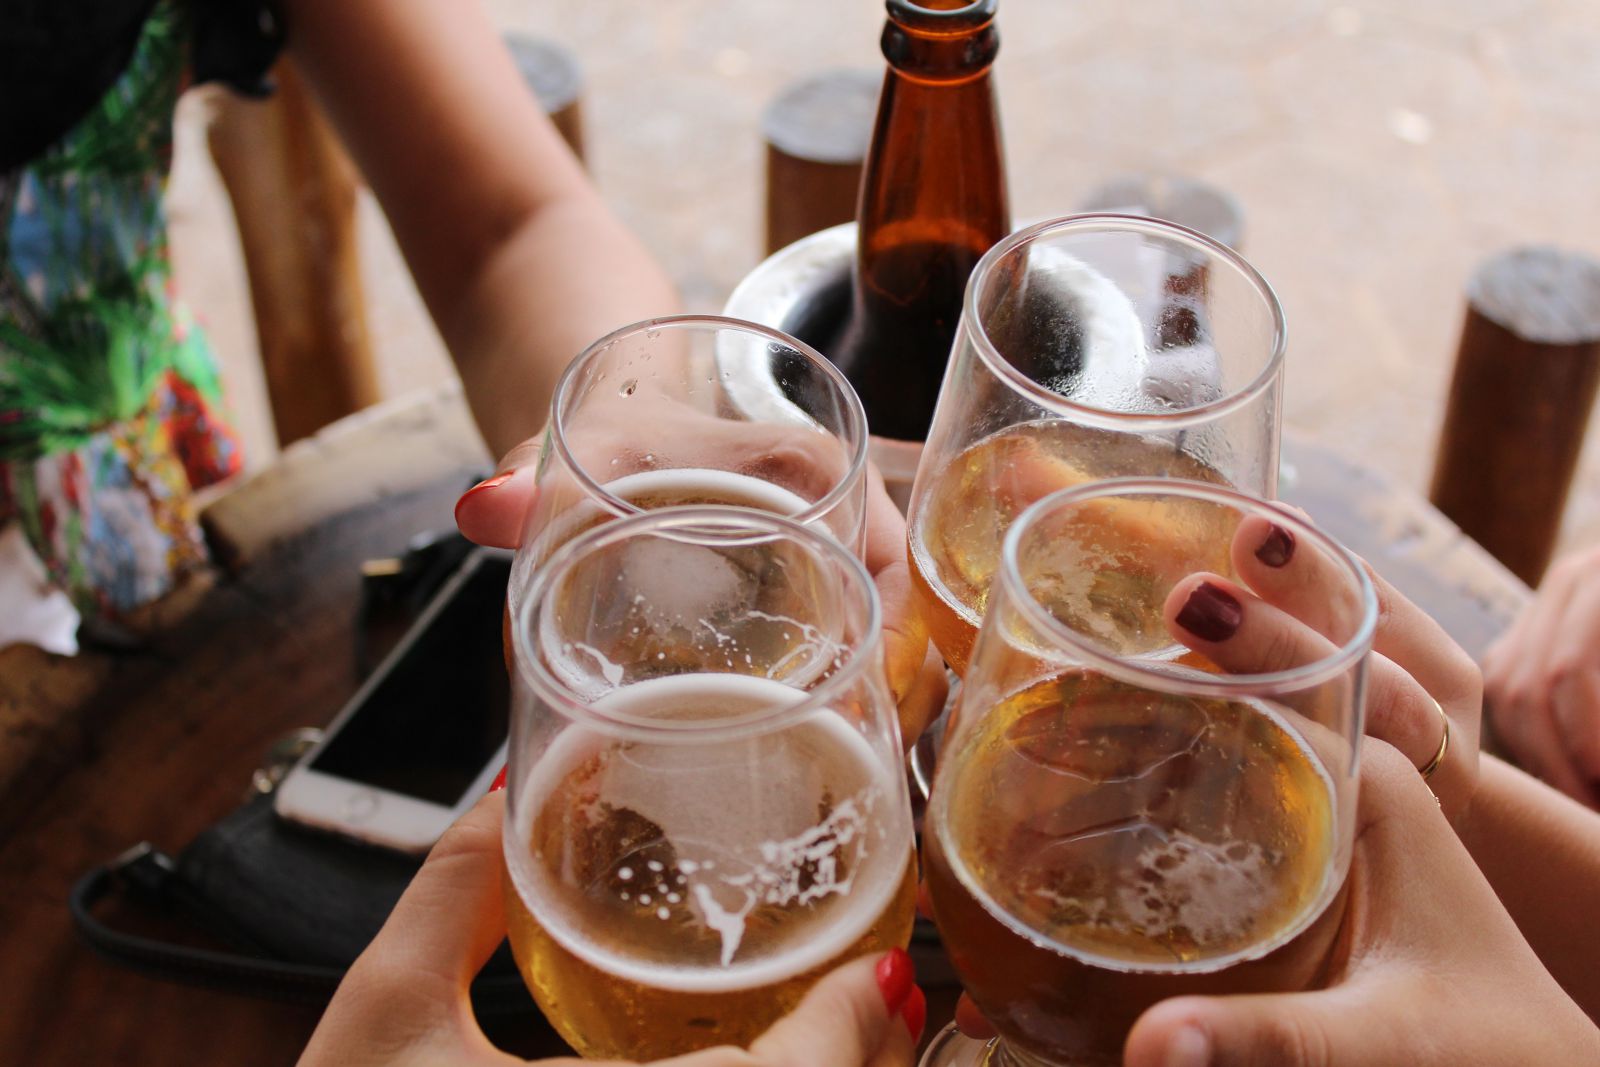 Grupo de pessoas segurando copos com cervejas e outras bebidas